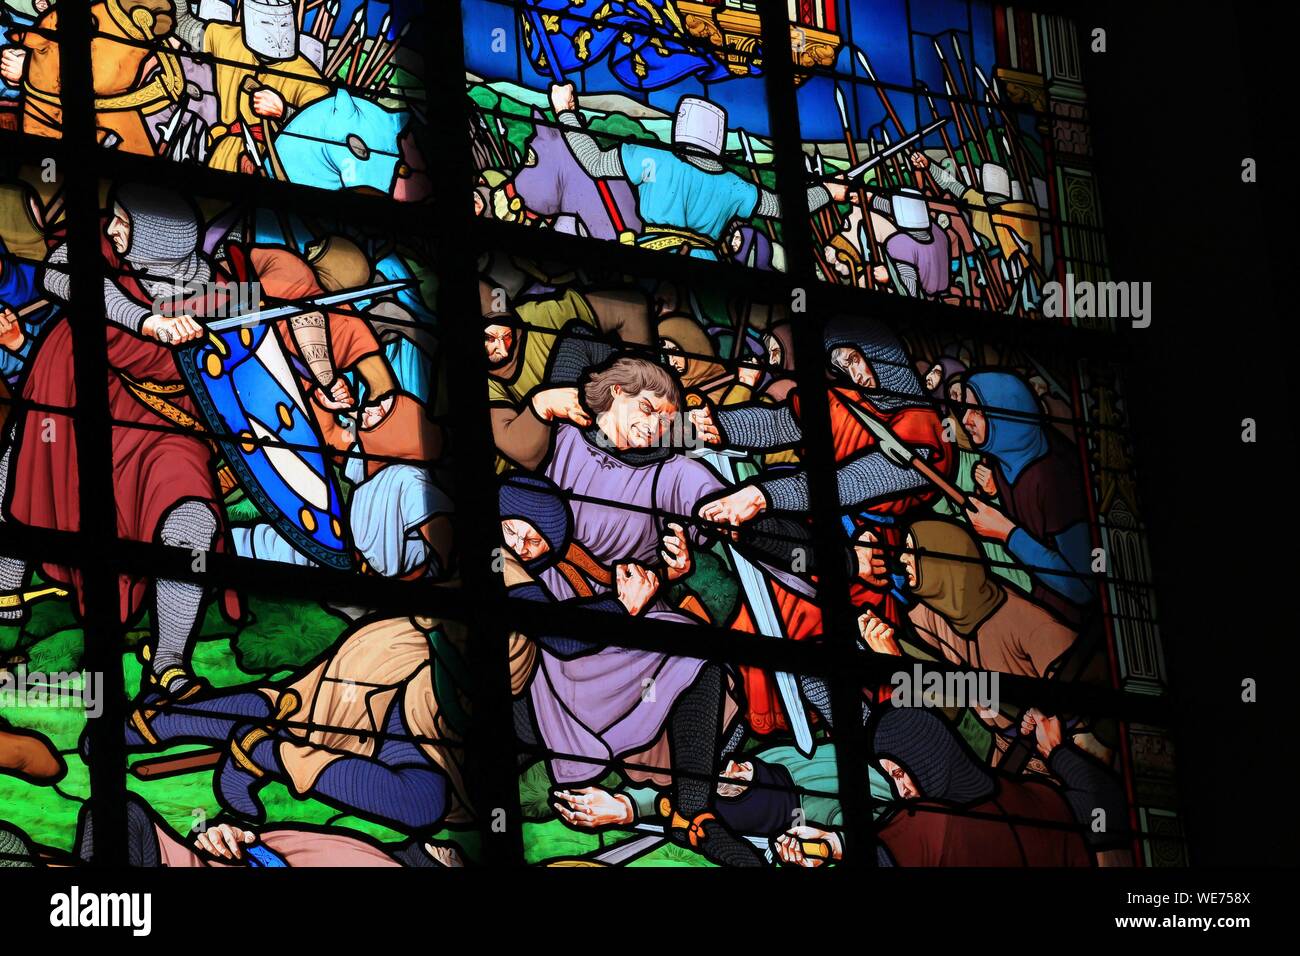 France, Nord, Bouvines, vitraux de l'église Saint Pierre de Bouvines, vue intérieure Banque D'Images